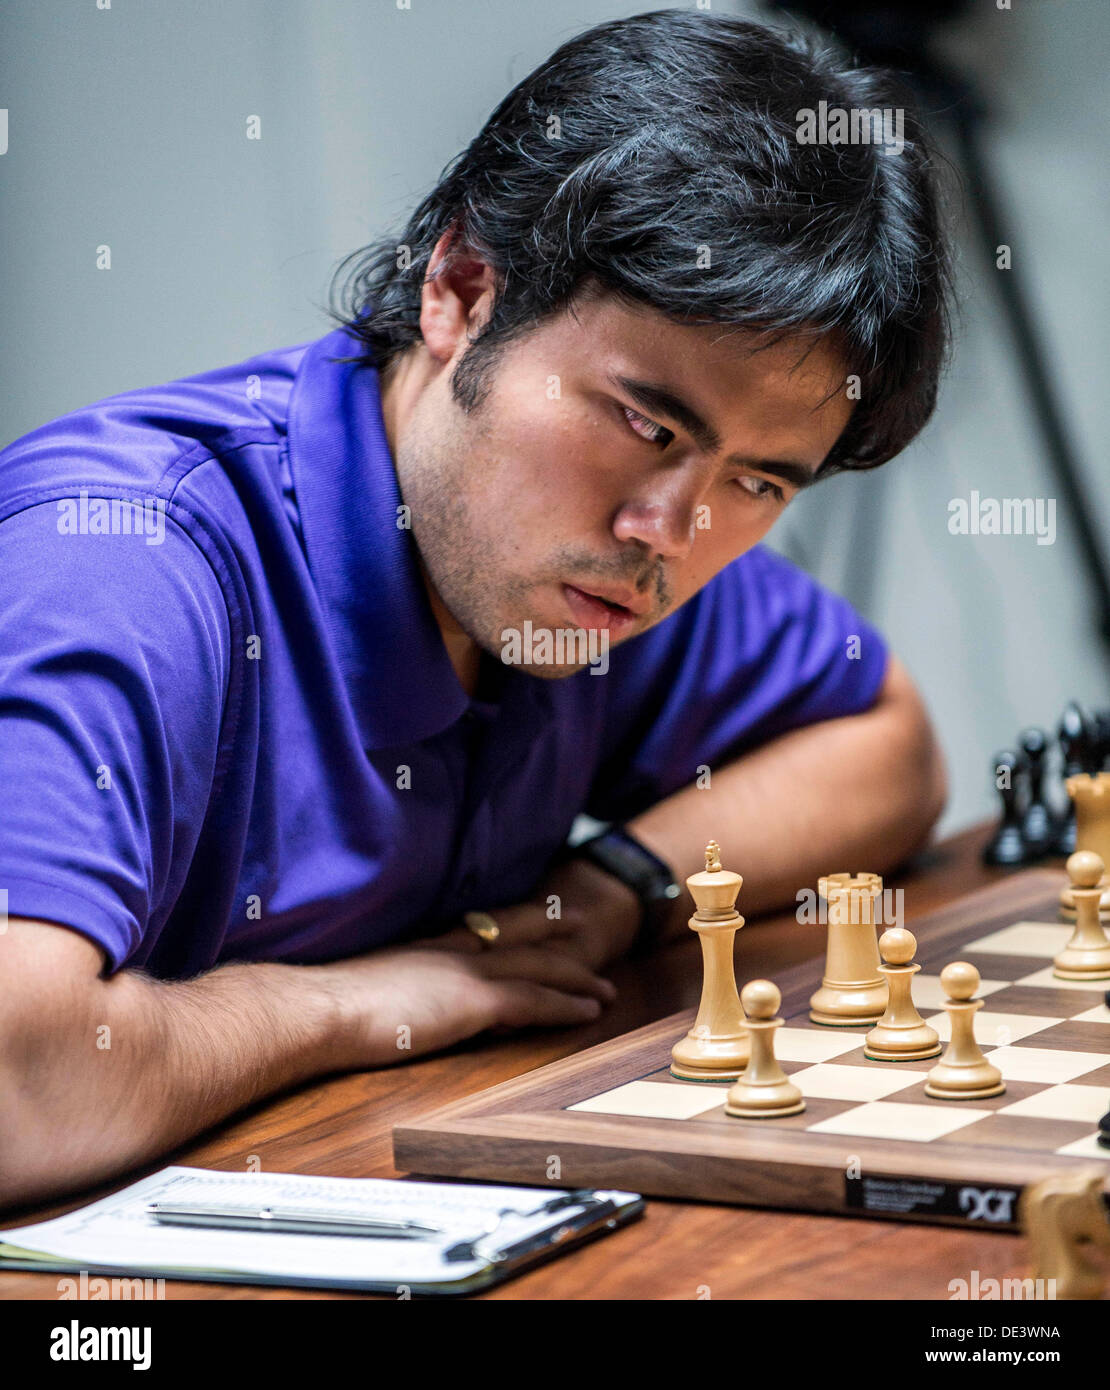 Is Hikaru Nakamura the best US chess player? - Quora